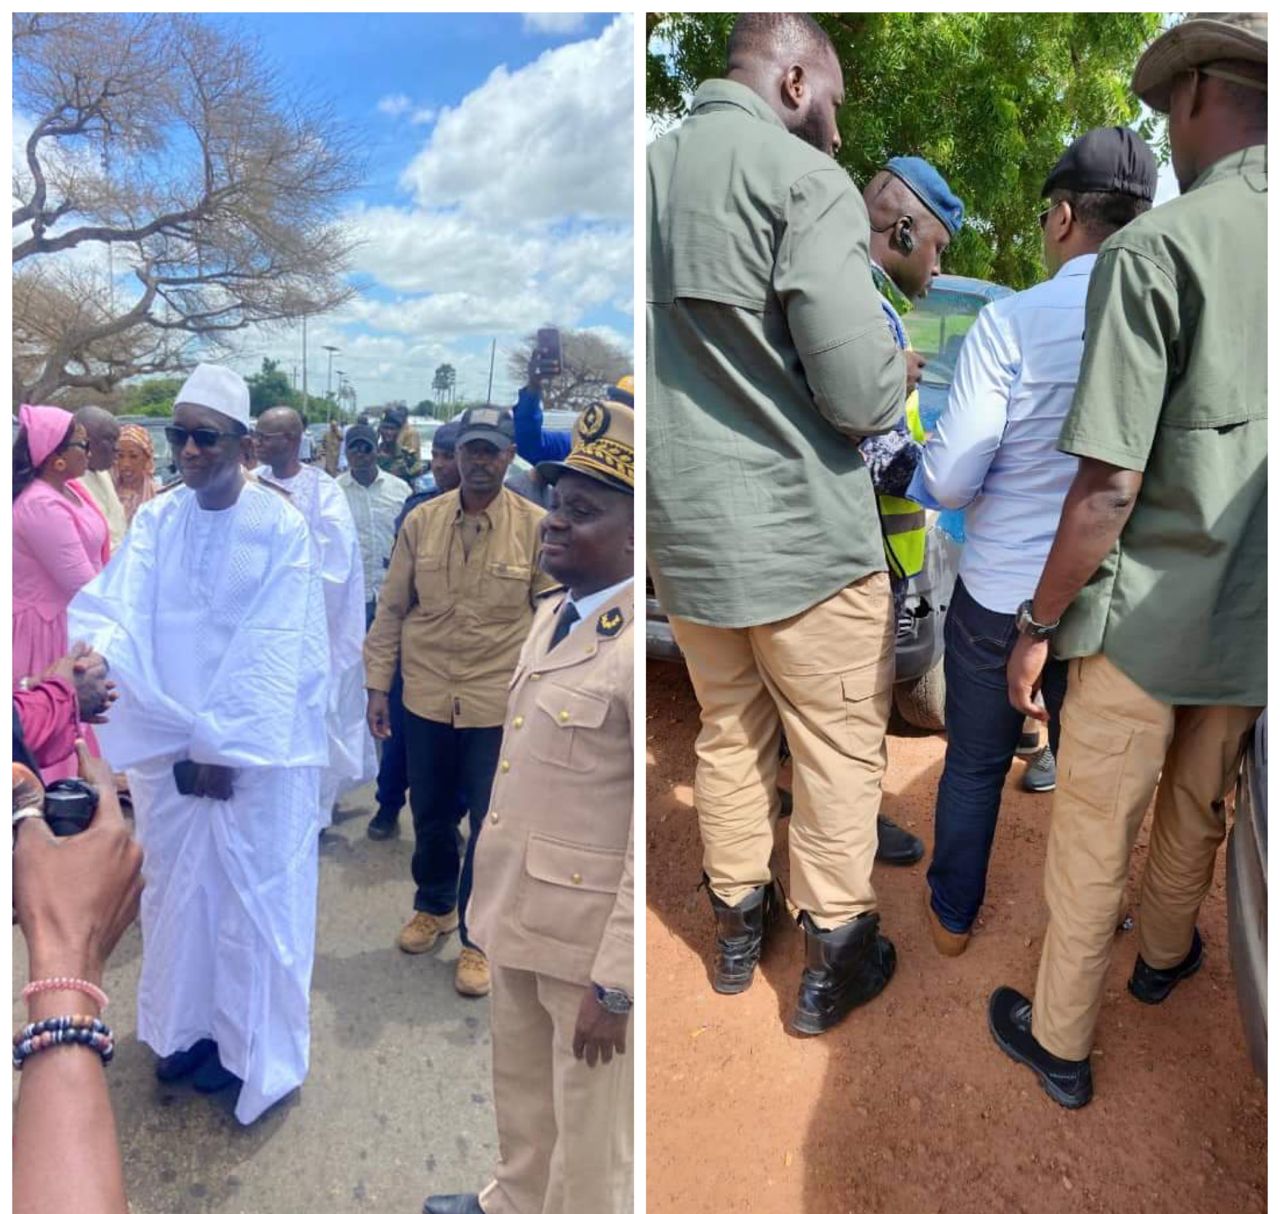 Le cortège du candidat Bougane Guèye Dany arrêté à Koussanar et Amadou Bâ déroule sans inquiétude à Tivaouane